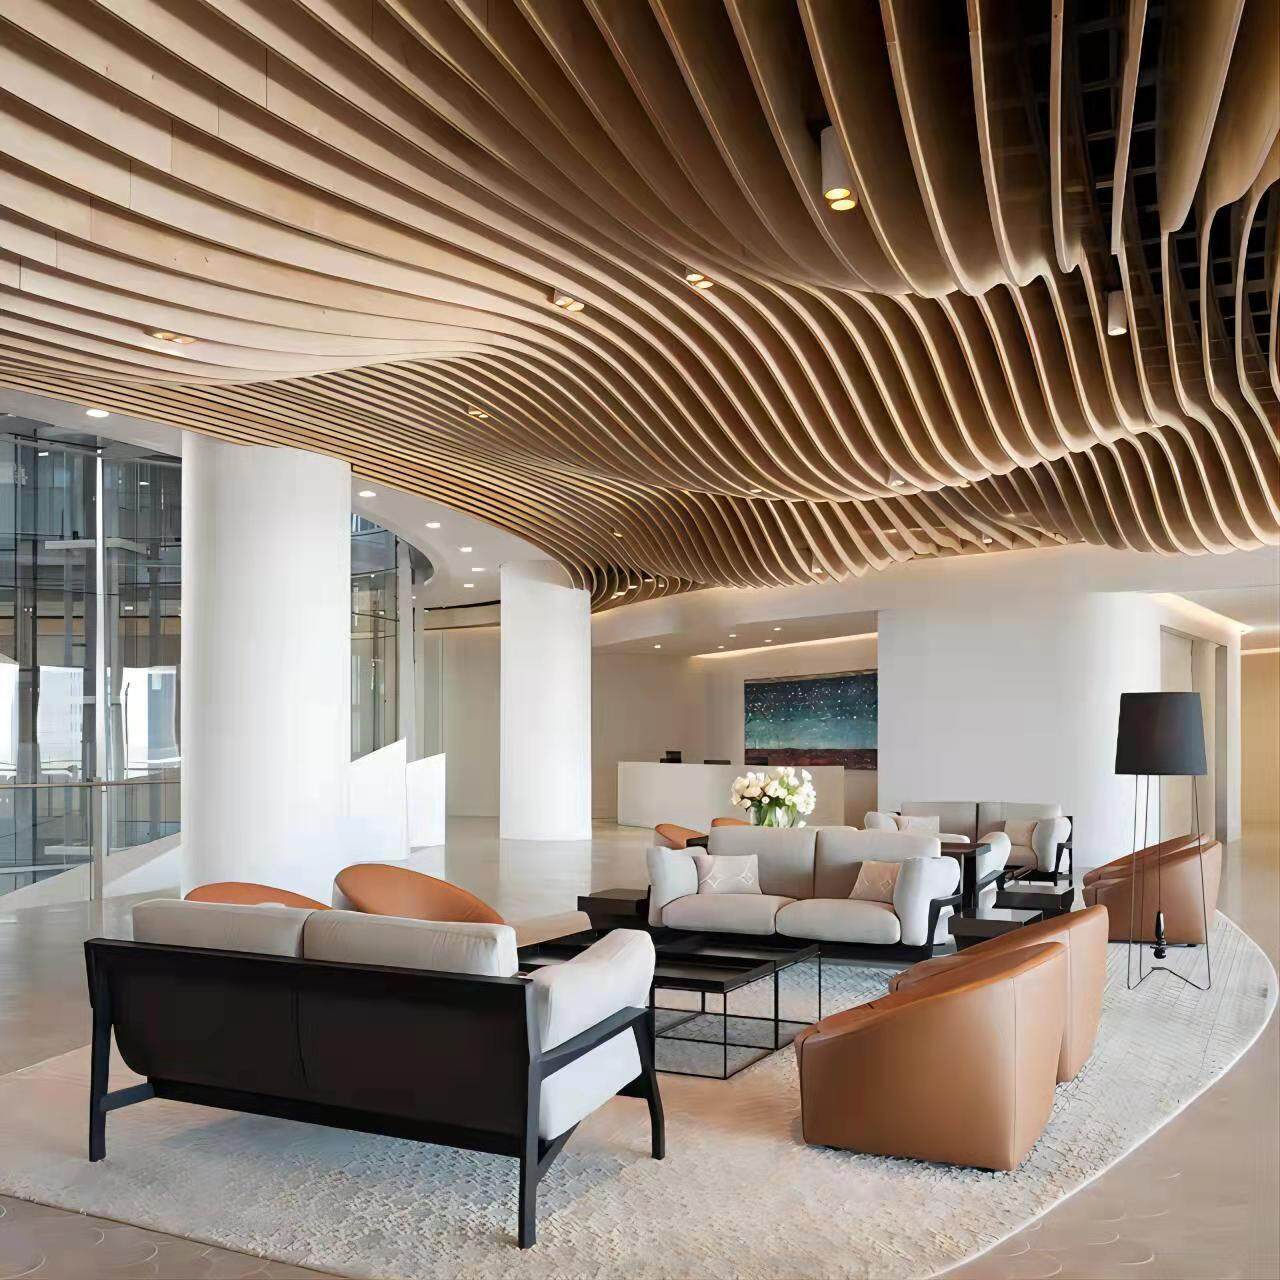 Wave design baffle ceiling for indoor decoration